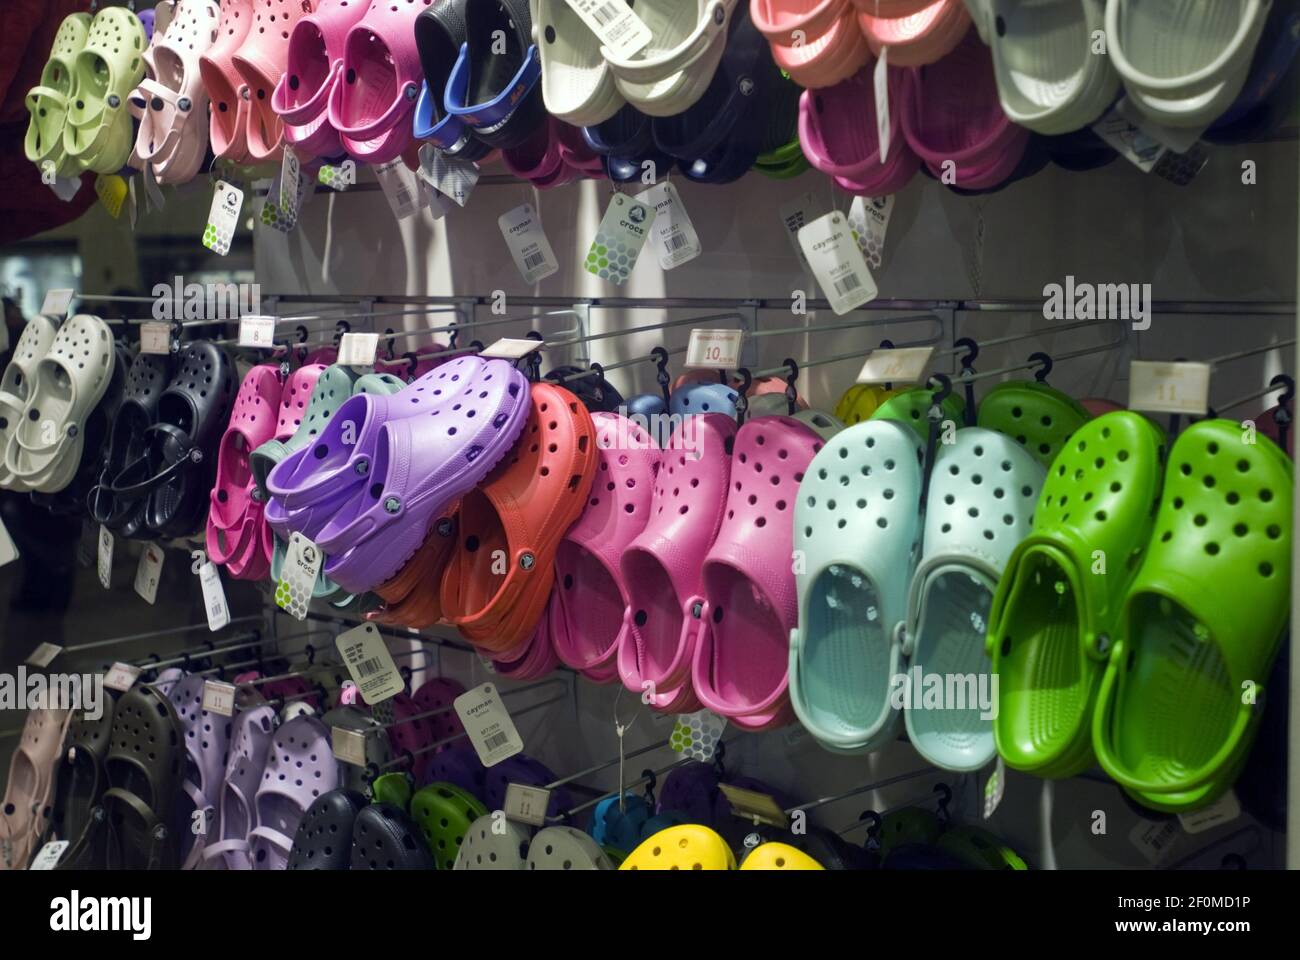 El miércoles 24 de diciembre de 2008 se ve una exhibición de calzado Crocs  en una tienda de artículos deportivos en Nueva York. Según un análisis del  Buckingham Research Group, tanto Crocs